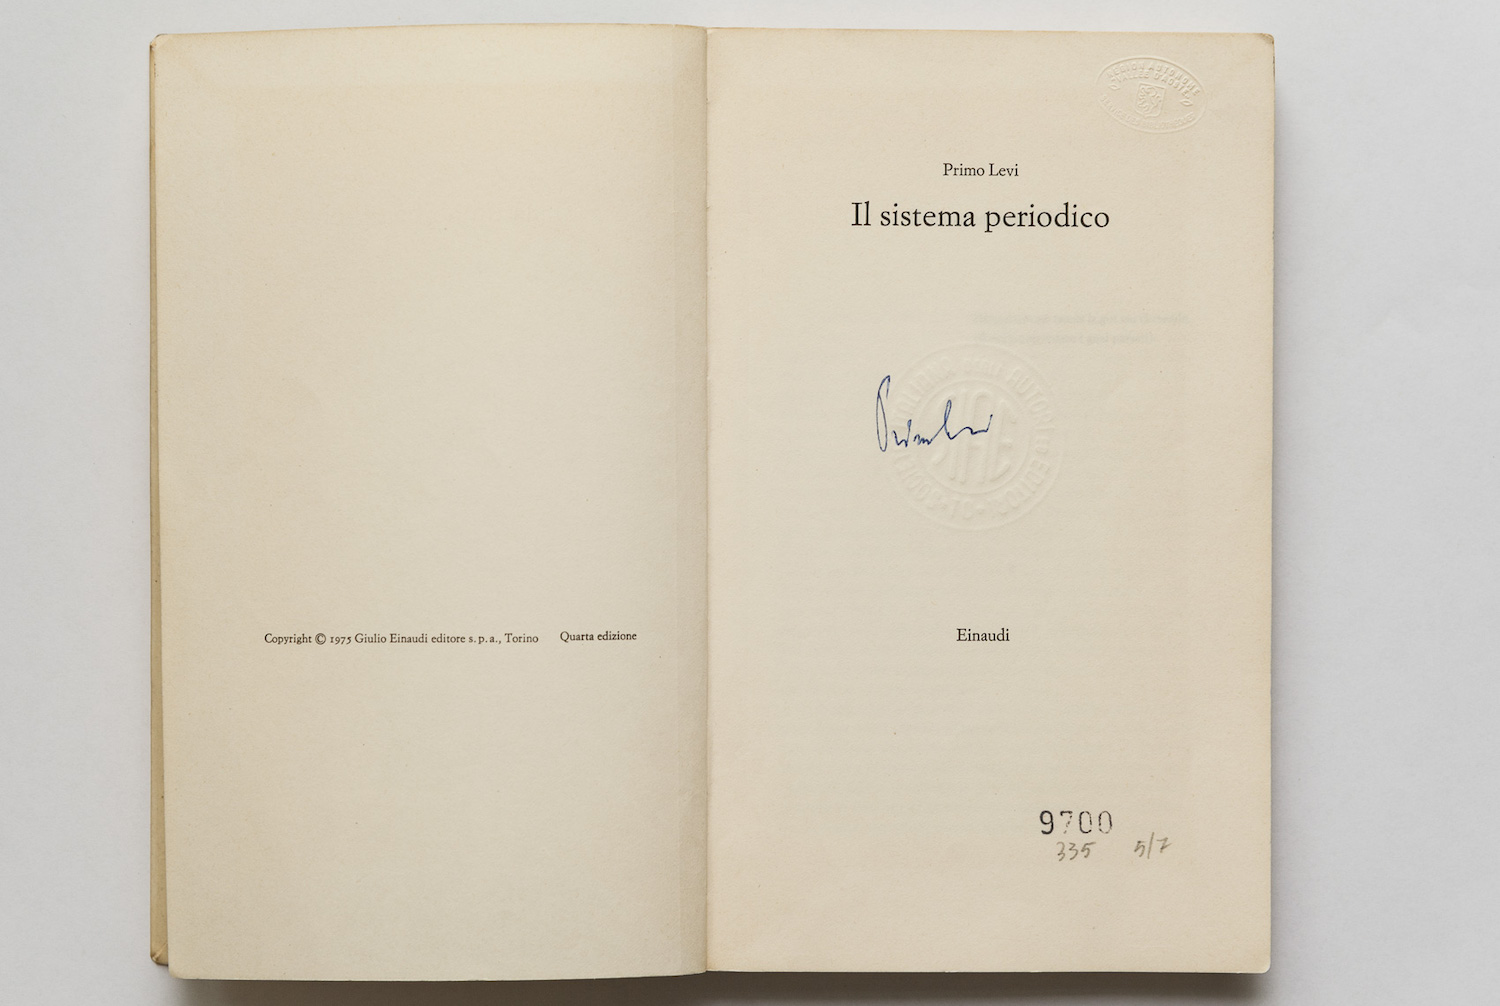 La copia de Il sistema periodico autografata da Primo Levi